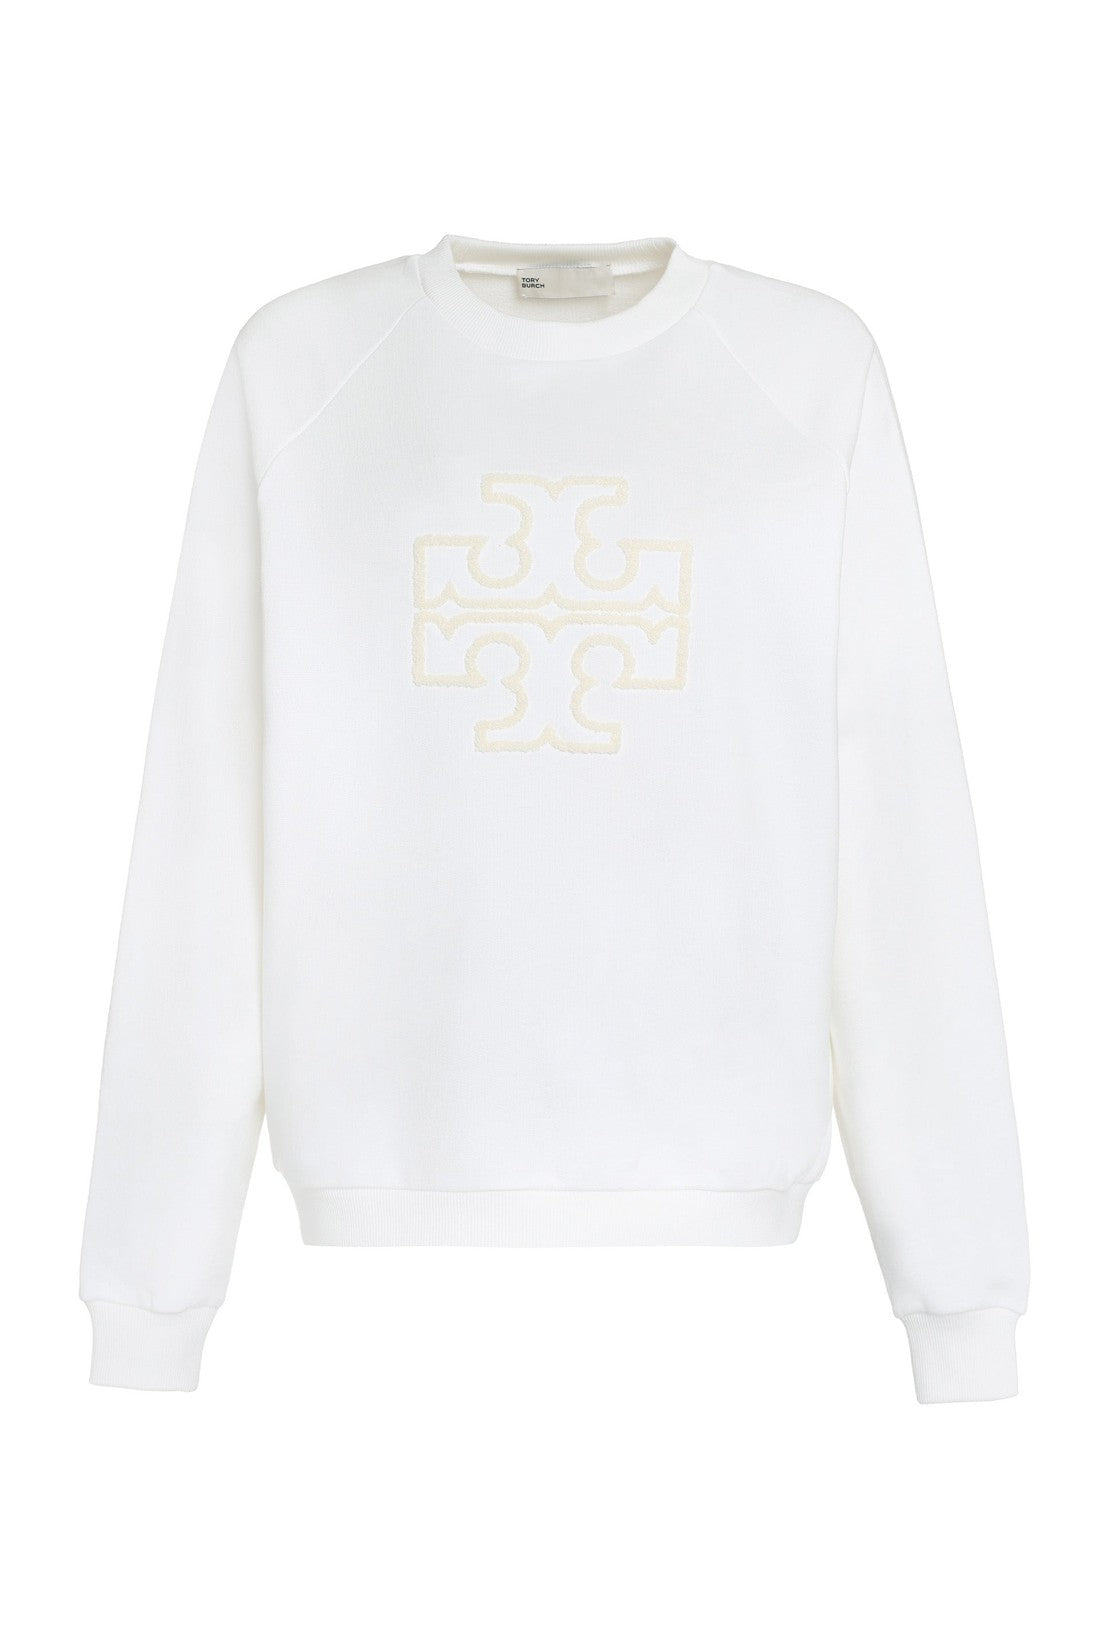 Tory Burch-OUTLET-SALE-Logo detail cotton sweatshirt-ARCHIVIST